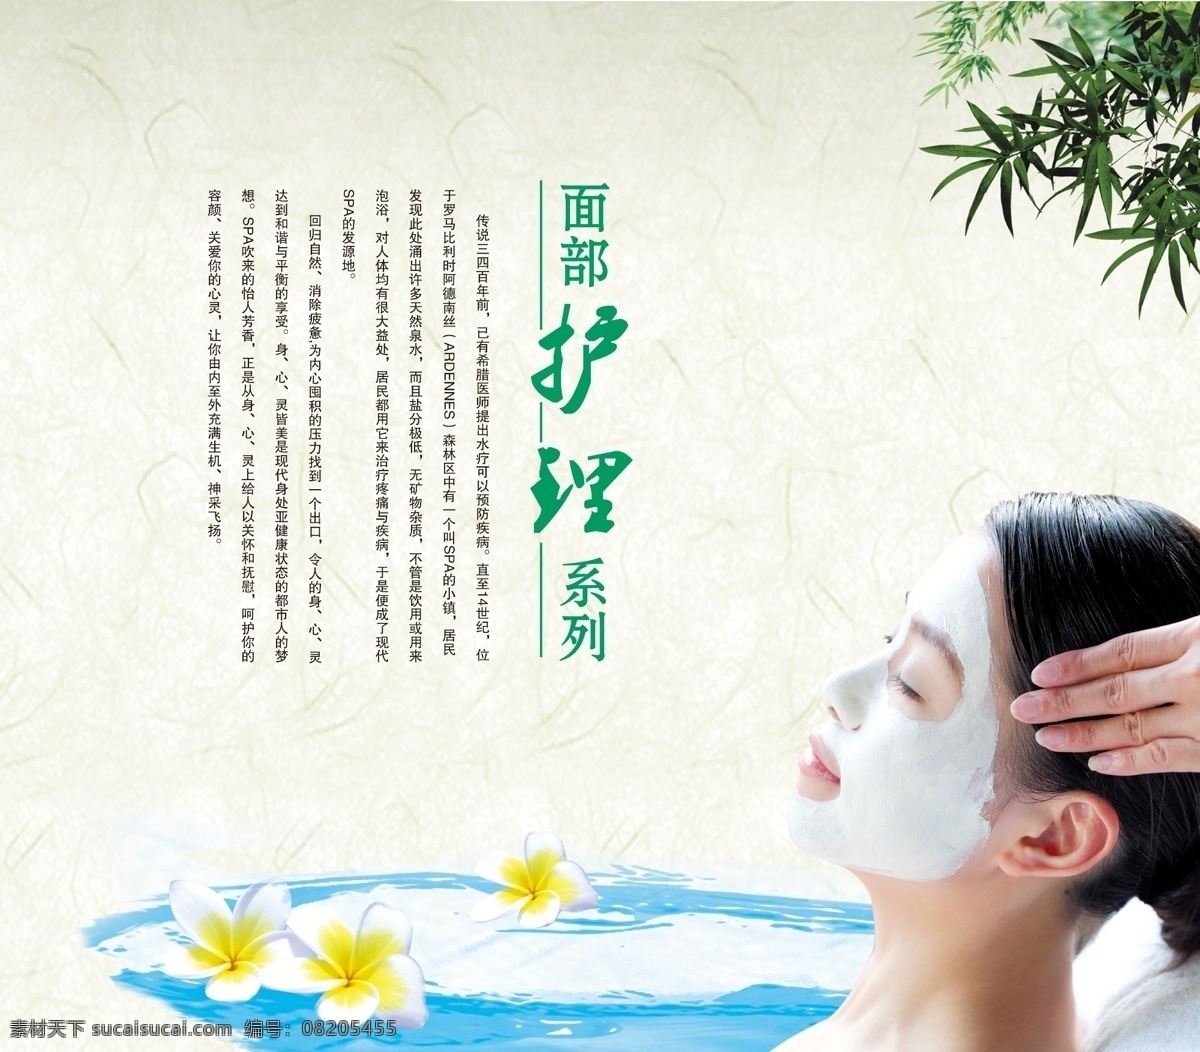 面部护理 美女 美容 养颜 spa 洗浴 女人 面膜 按摩 精油 养生保健 中国风 psd分层 享受 展板模板 广告设计模板 源文件